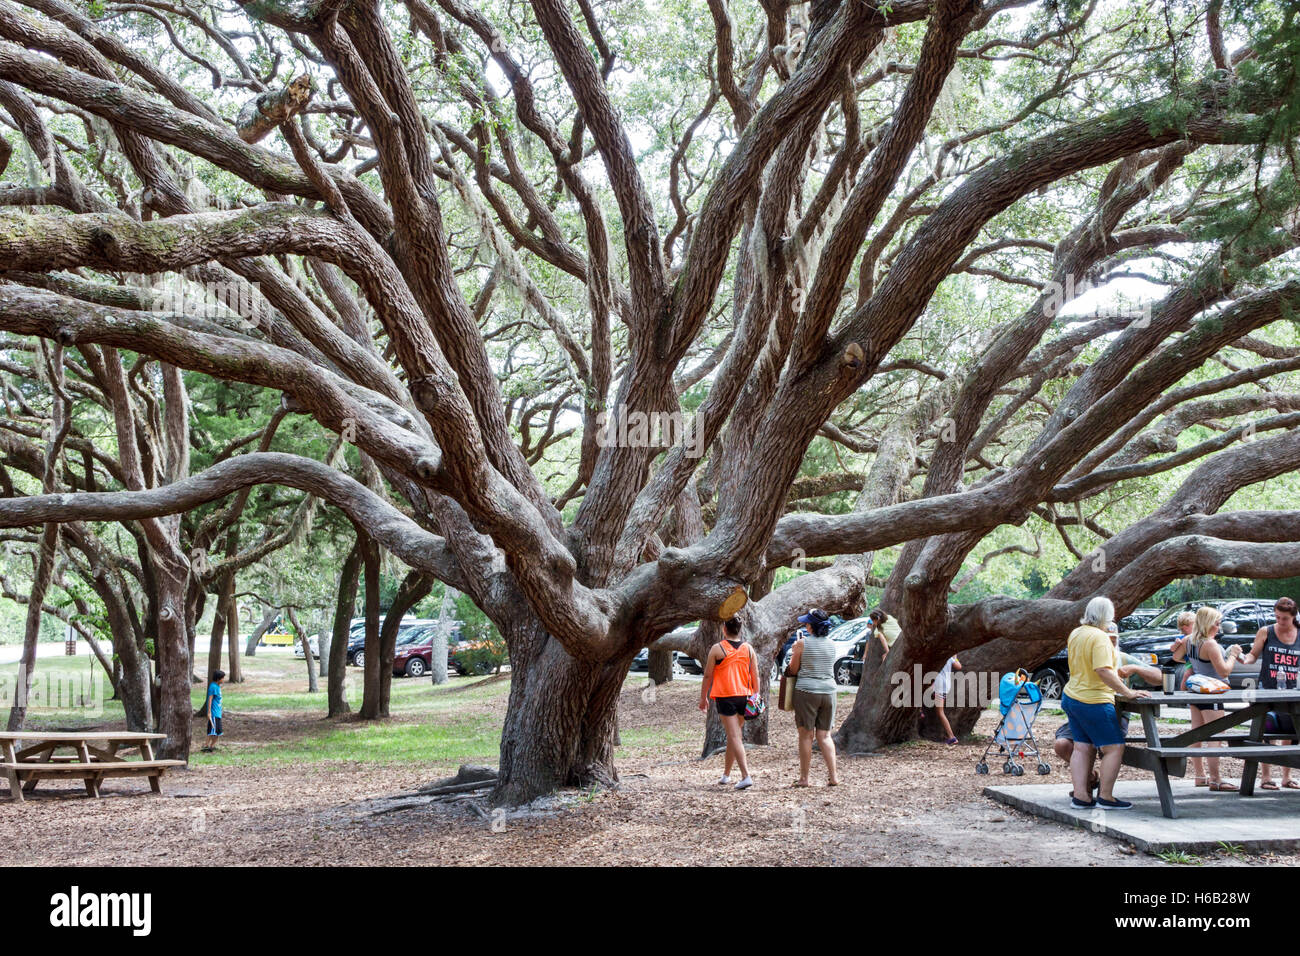 St. Saint Augustine Florida, Fort Matanzas National Monument, Park, Matanzas Inlet River, lebende Eichen, Bäume, Picknickbereich, FL160804002 Stockfoto